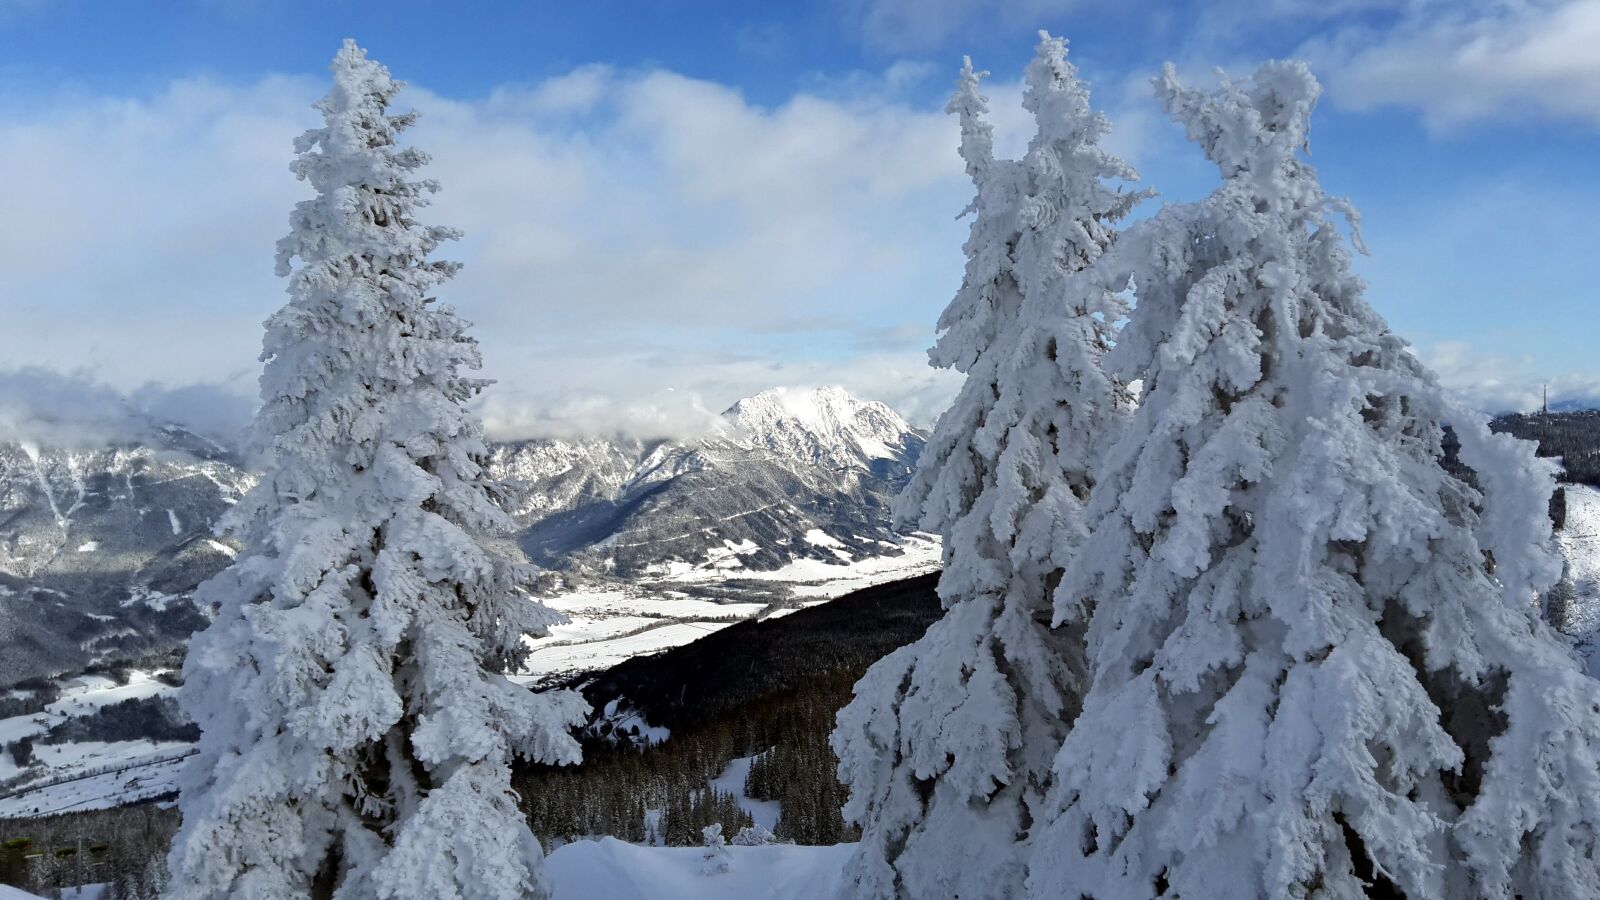 Samsung Galaxy A7 sample photo. Alps, mountains, austria photography